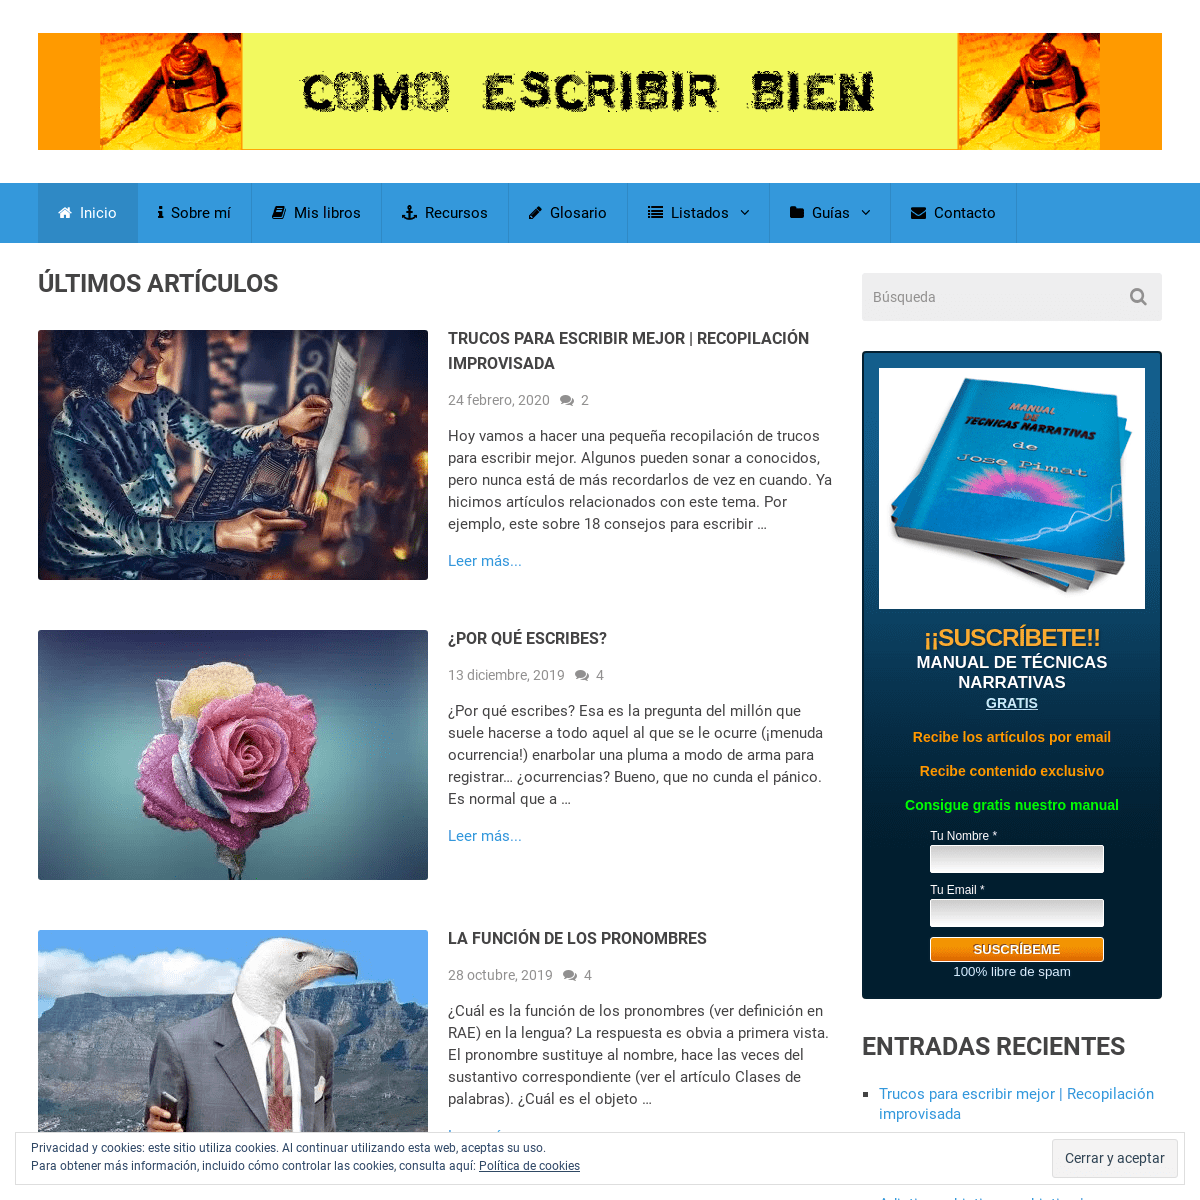 A complete backup of comoescribirbien.com